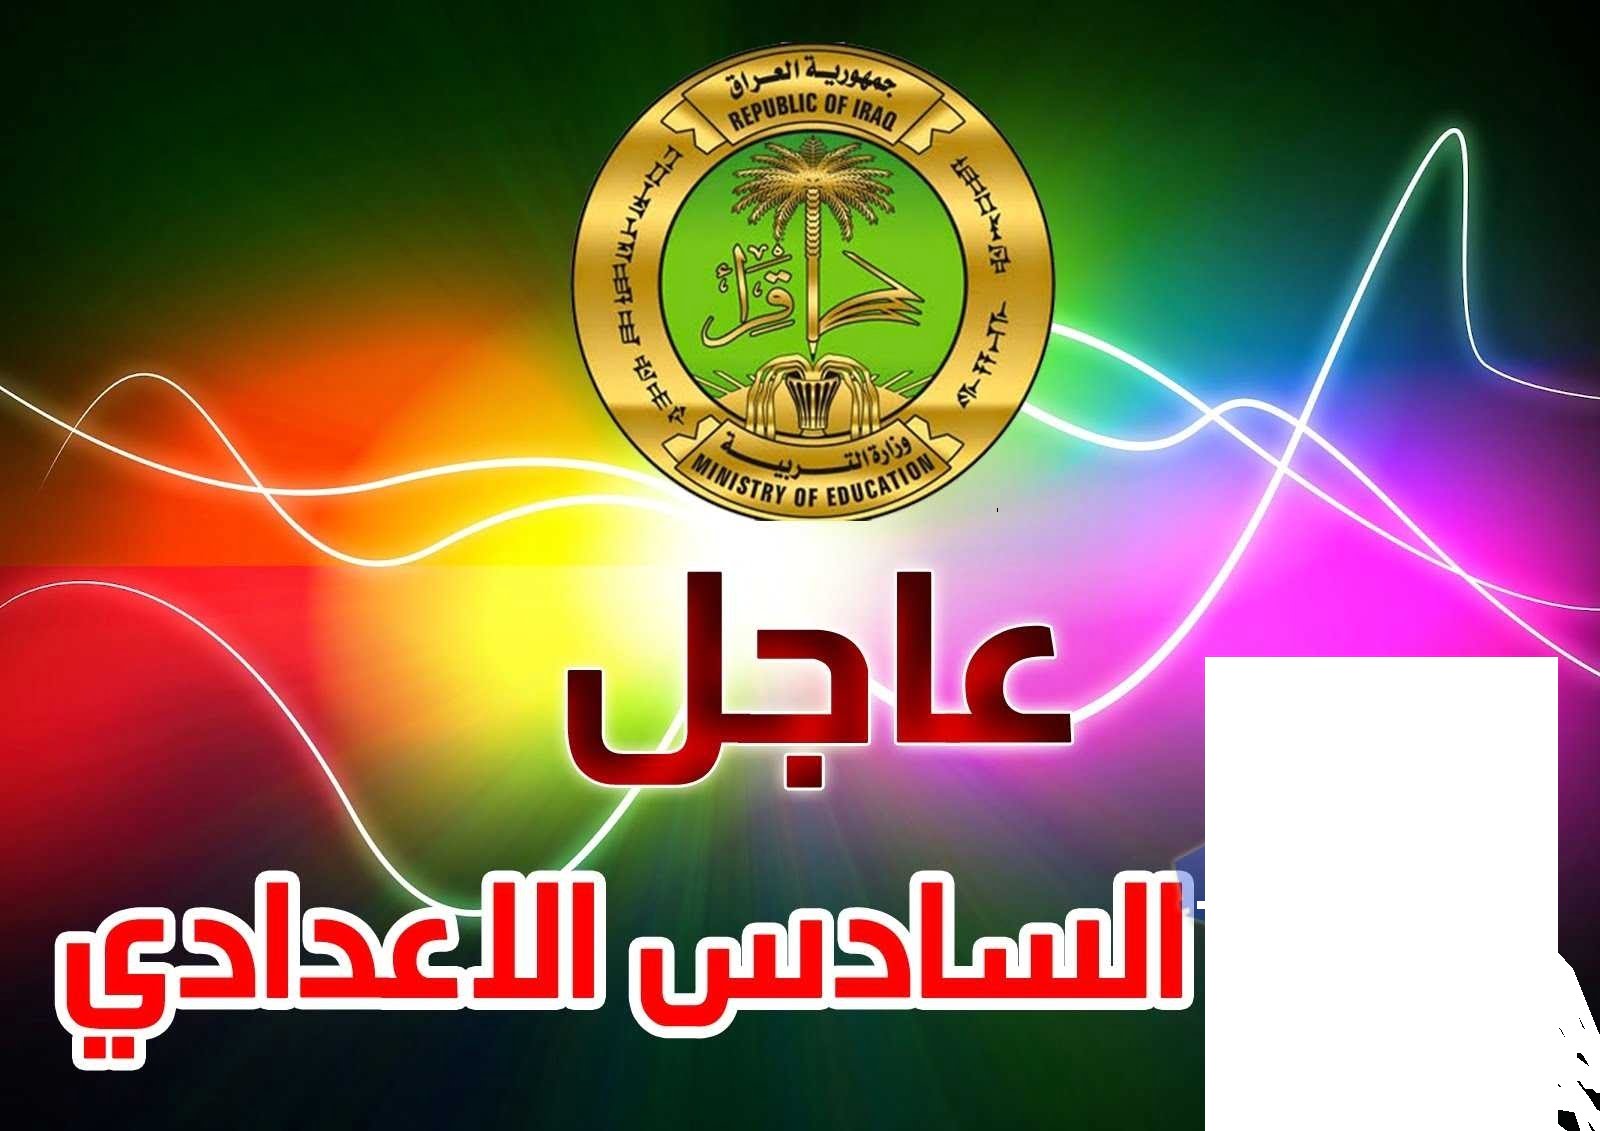 “طالع” نتائج السادس الإعدادي 2019 العراق الدور الأول برقم التلميذ